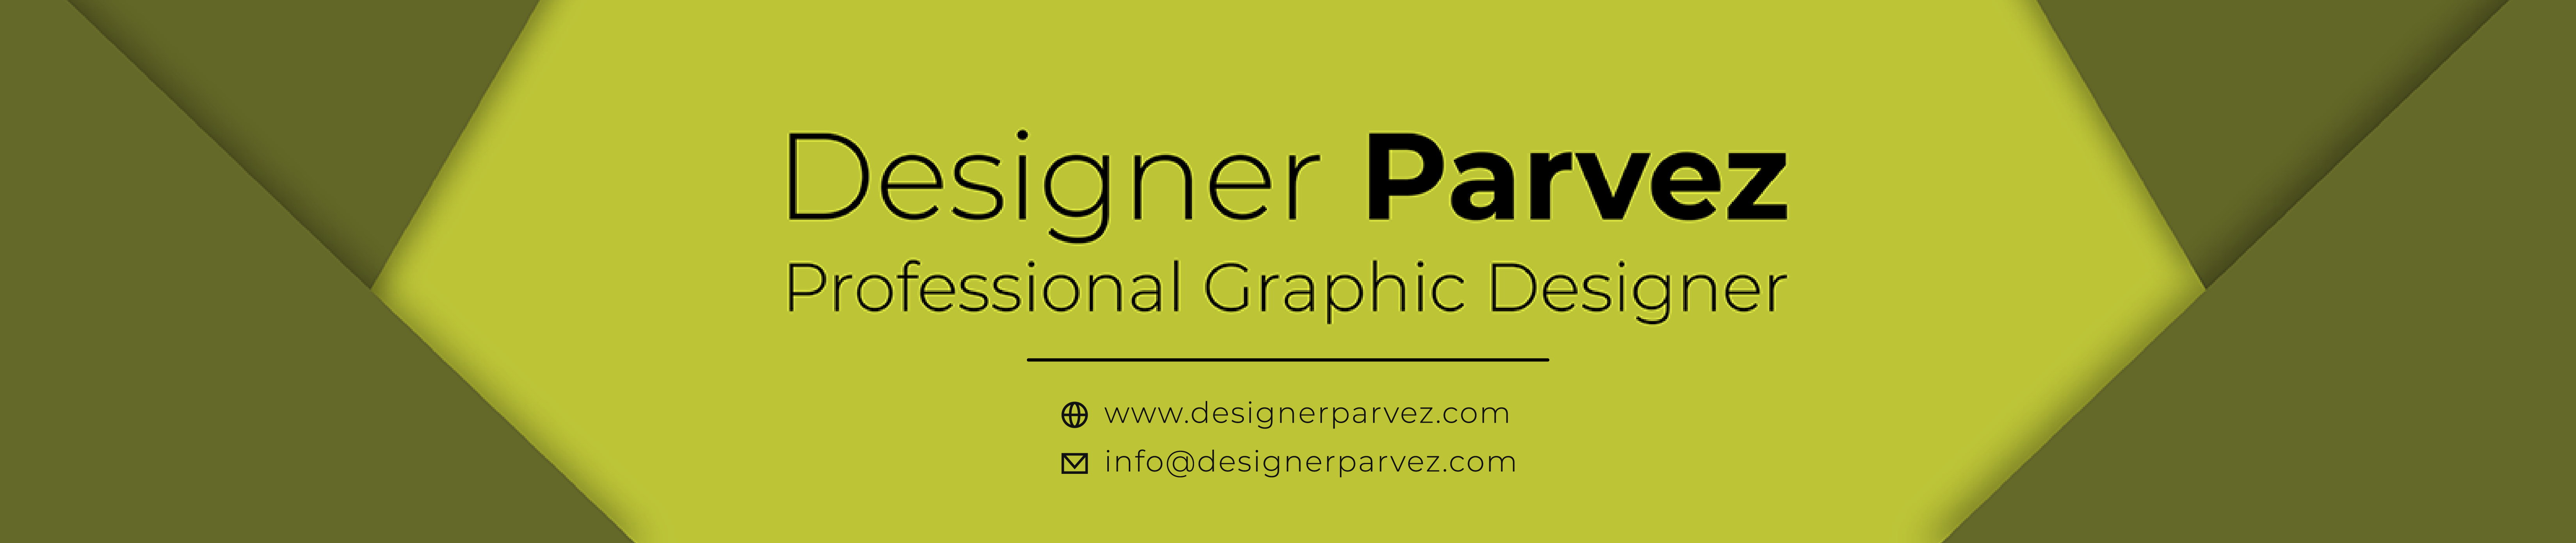 Designer Parvez's profile banner